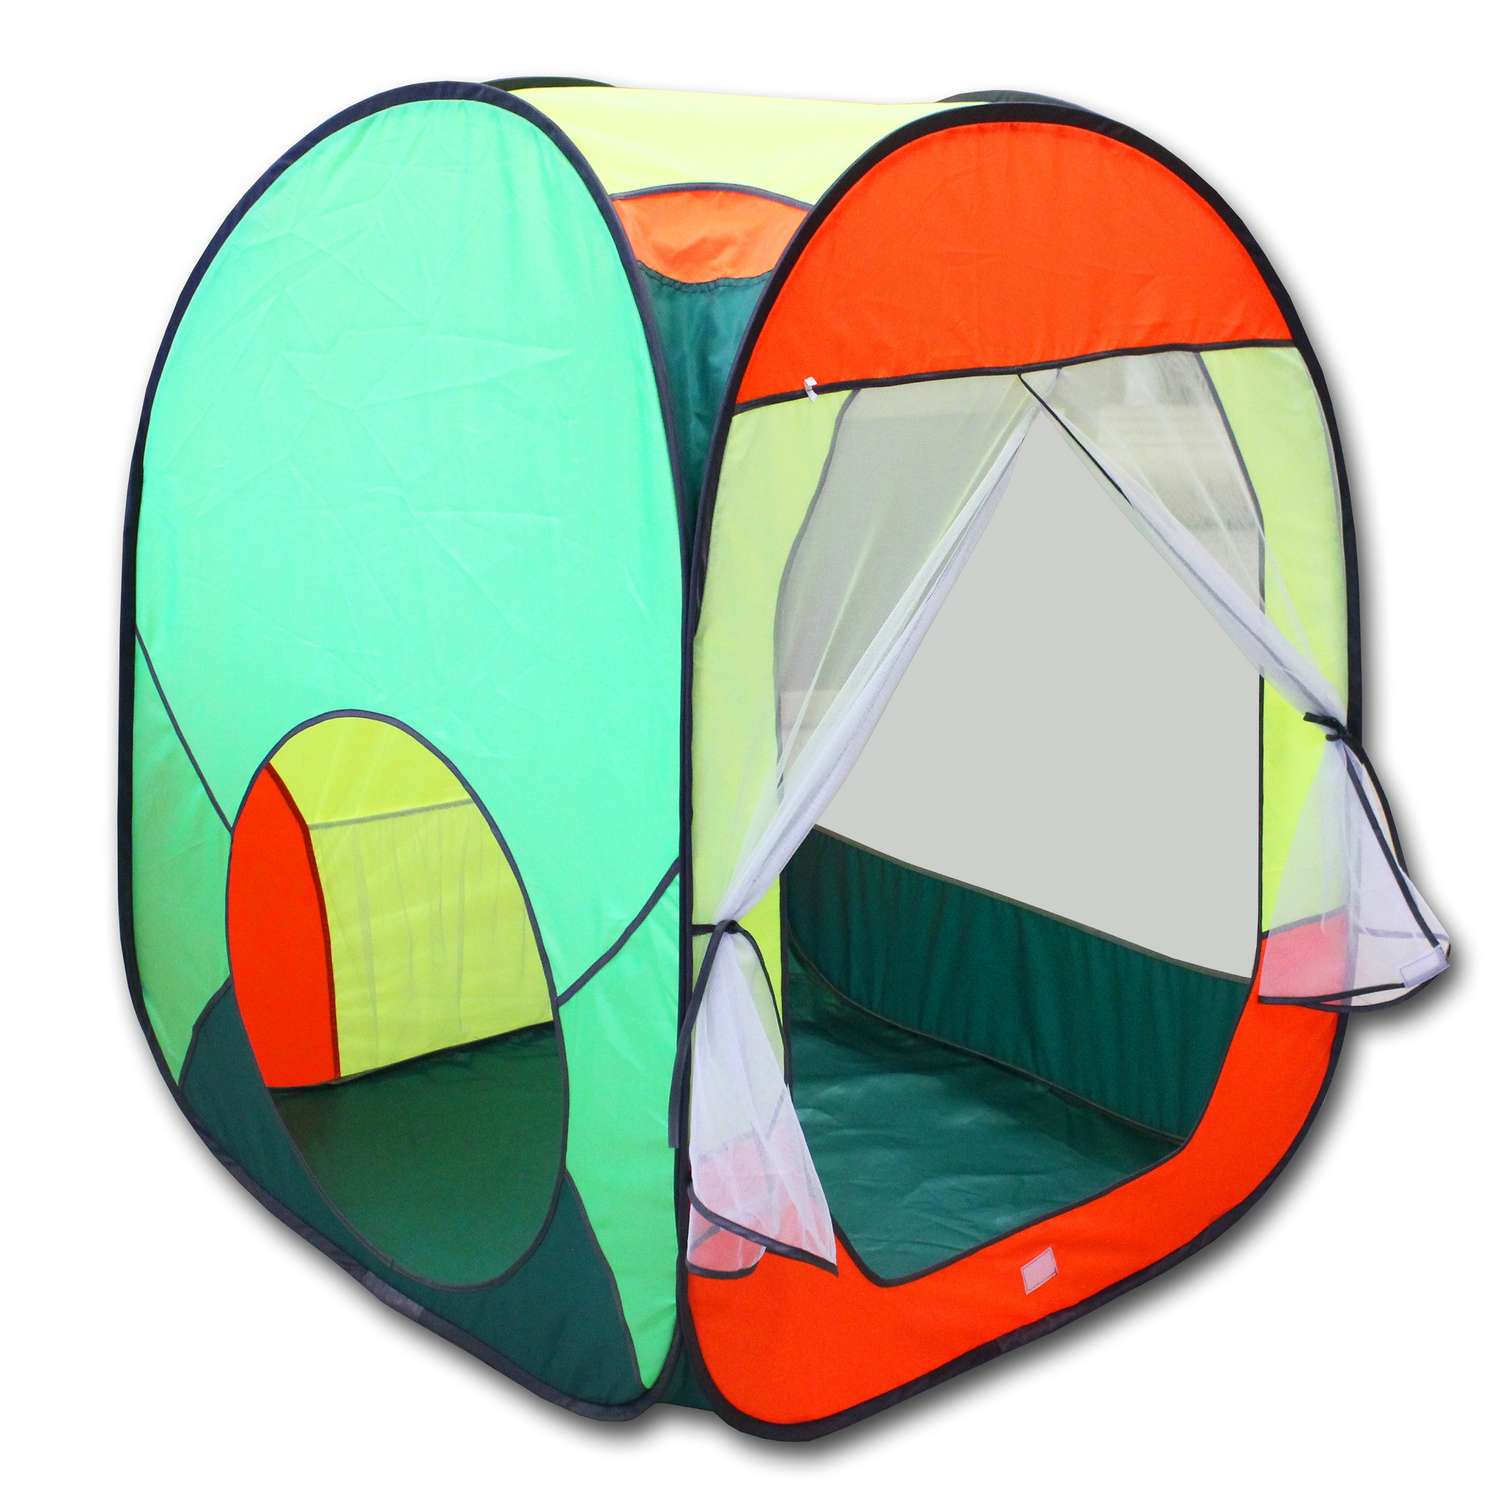 Палатка игровая Belon familia Радужный домик Цвет зеленый/оранж/лимон/салатовый Размеры 85х85х105 см - фото 1